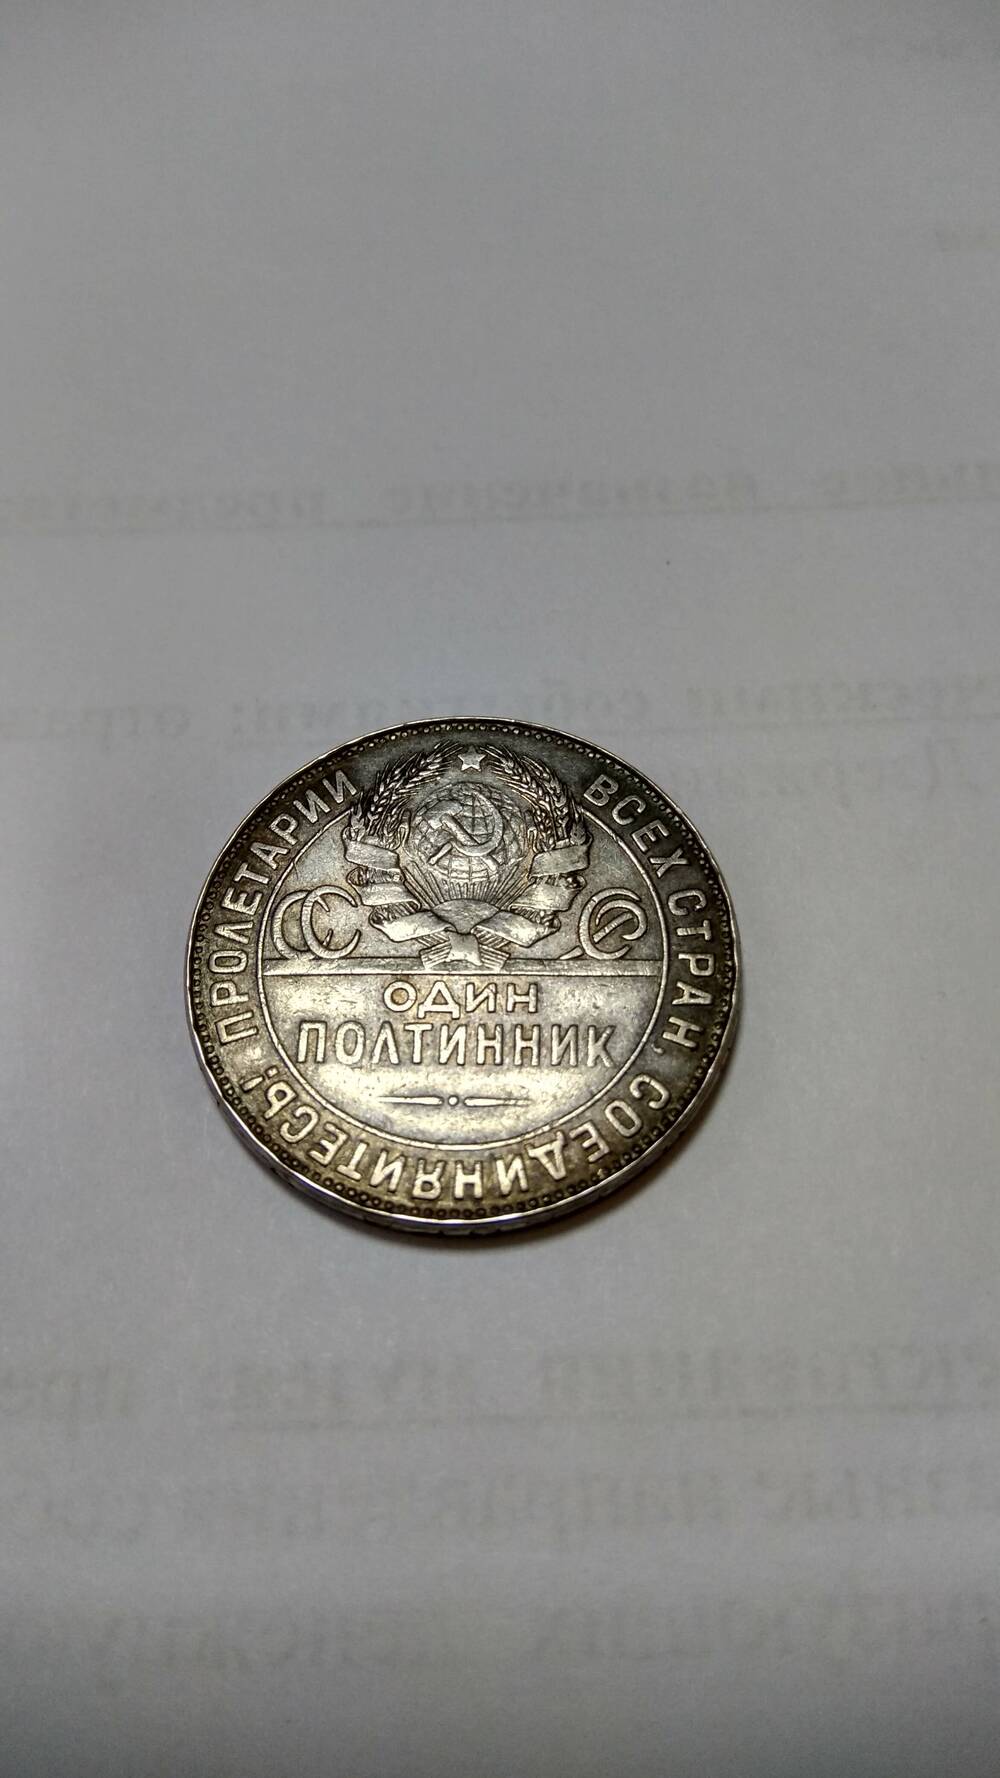 Монета номиналом один полтинник 1924 г. (реплика)